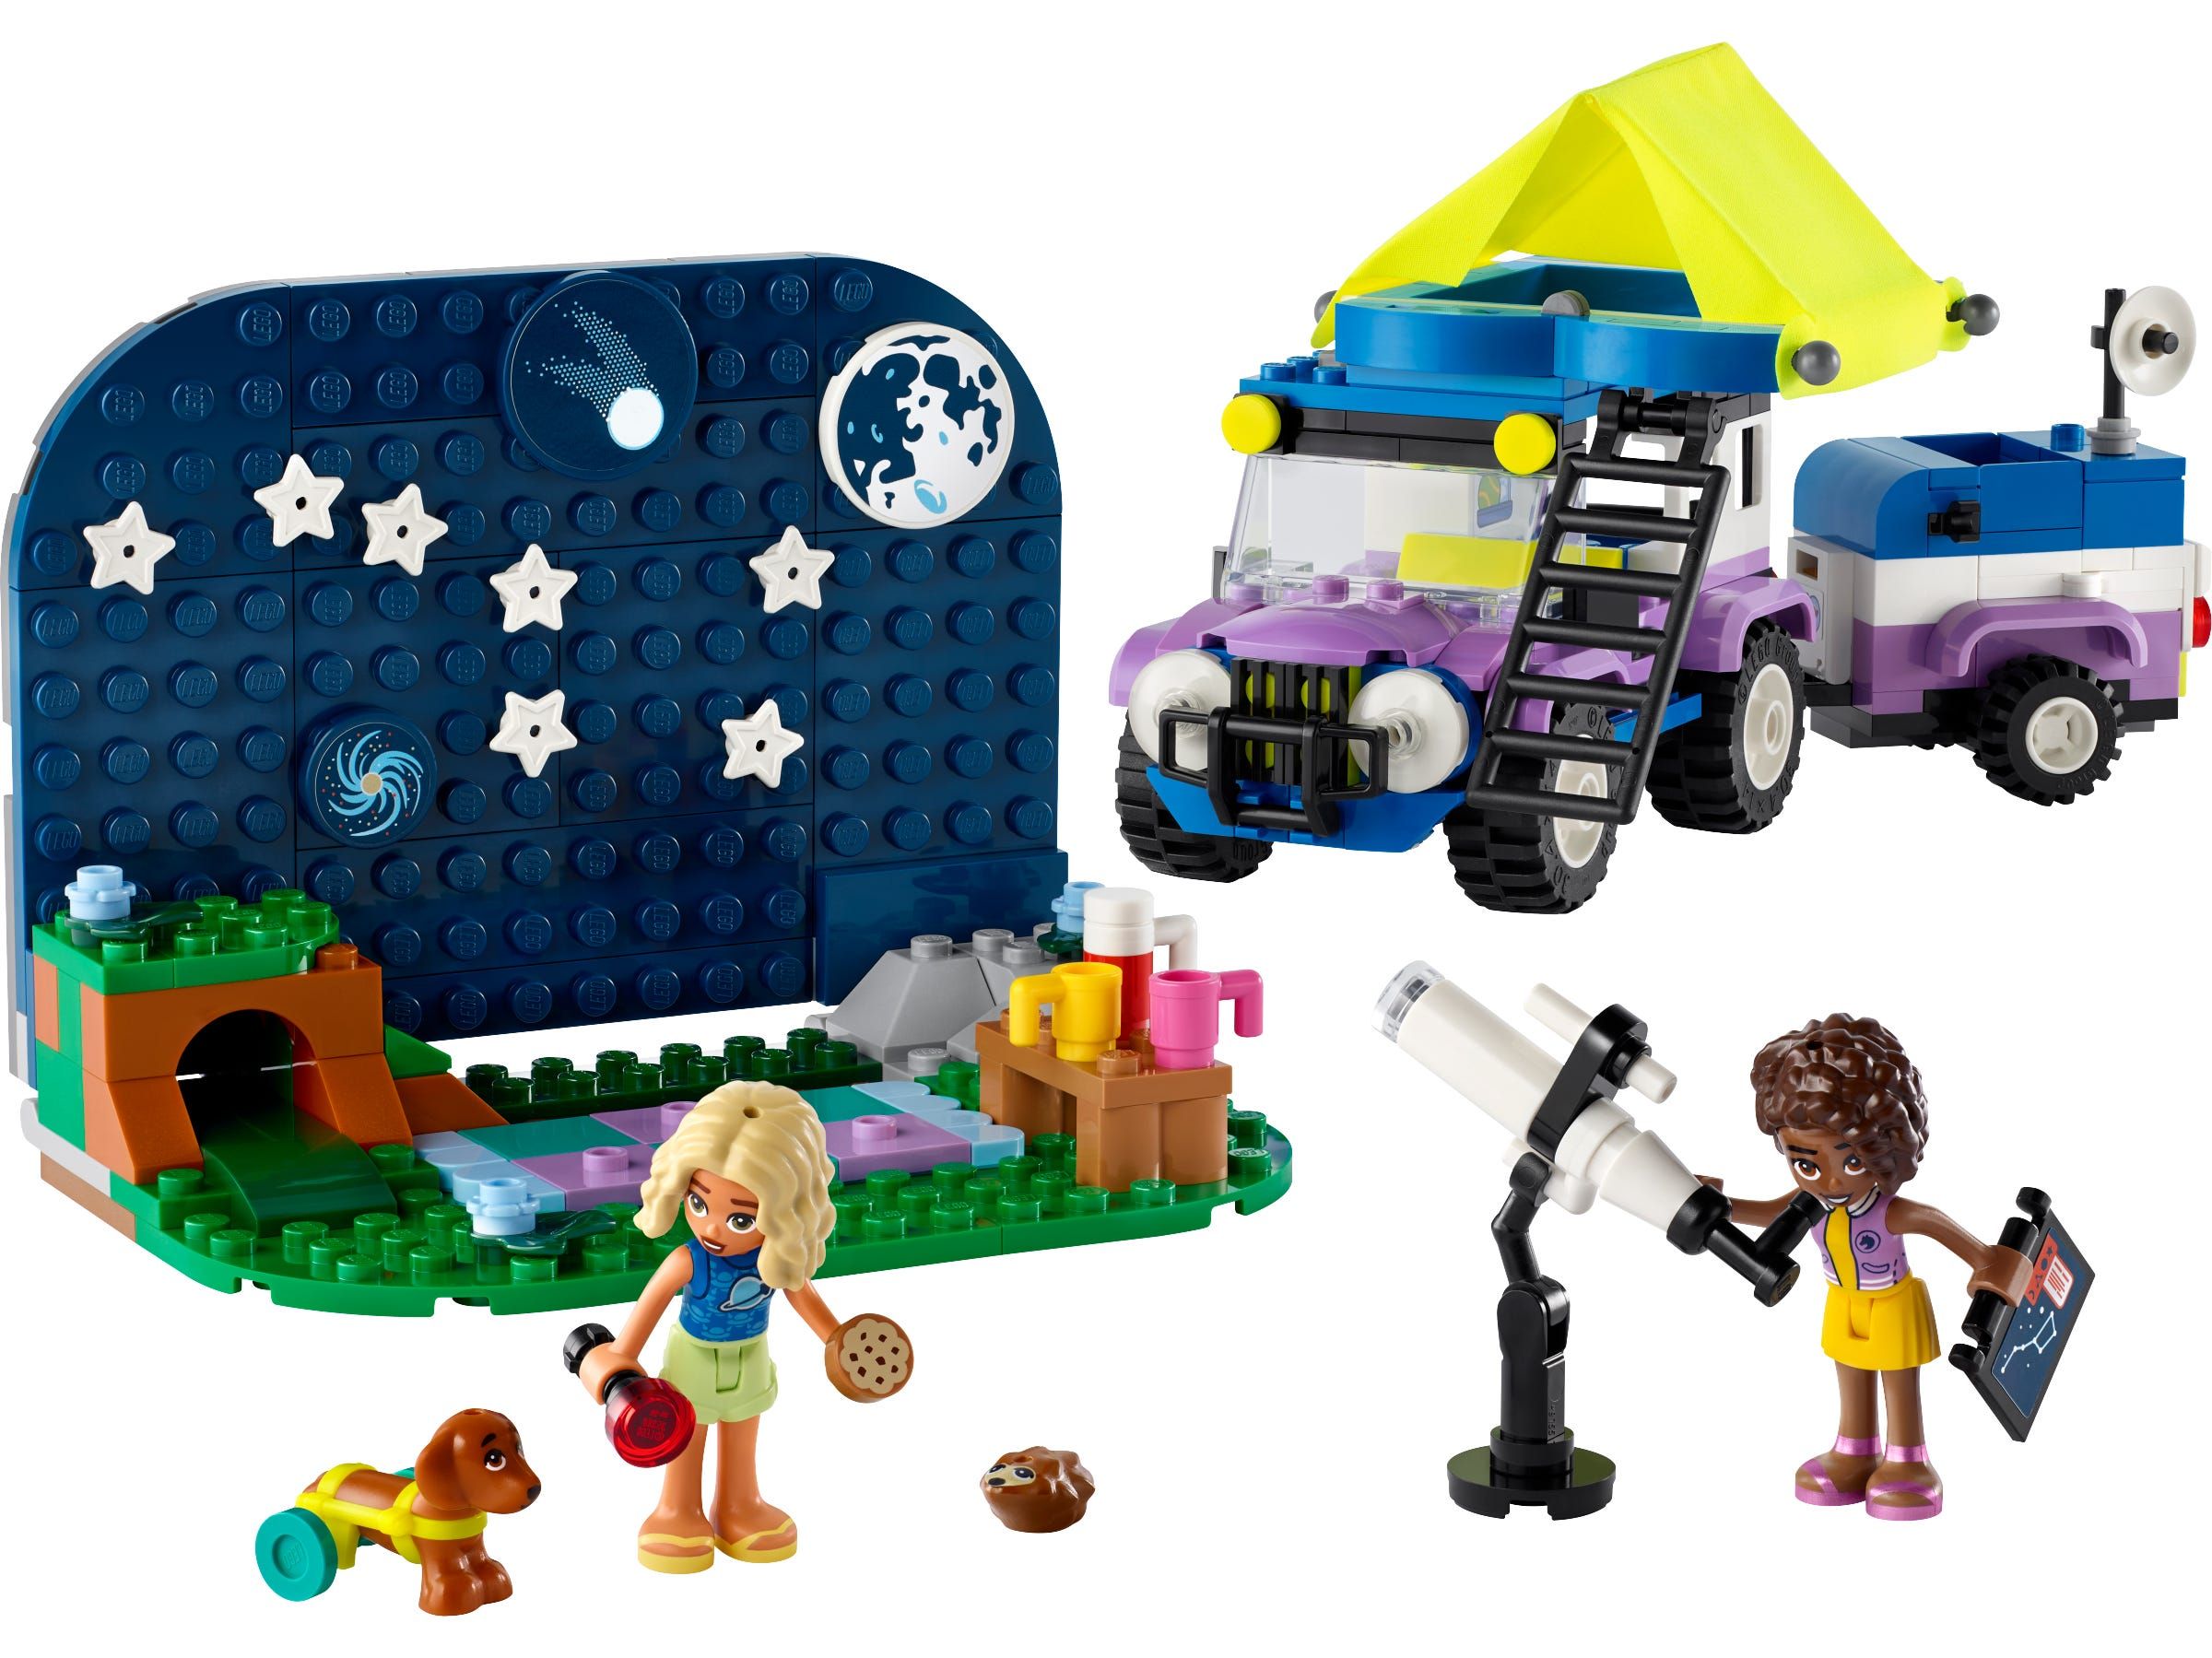 LEGO Friends Astronomisch kampeervoertuig 42603